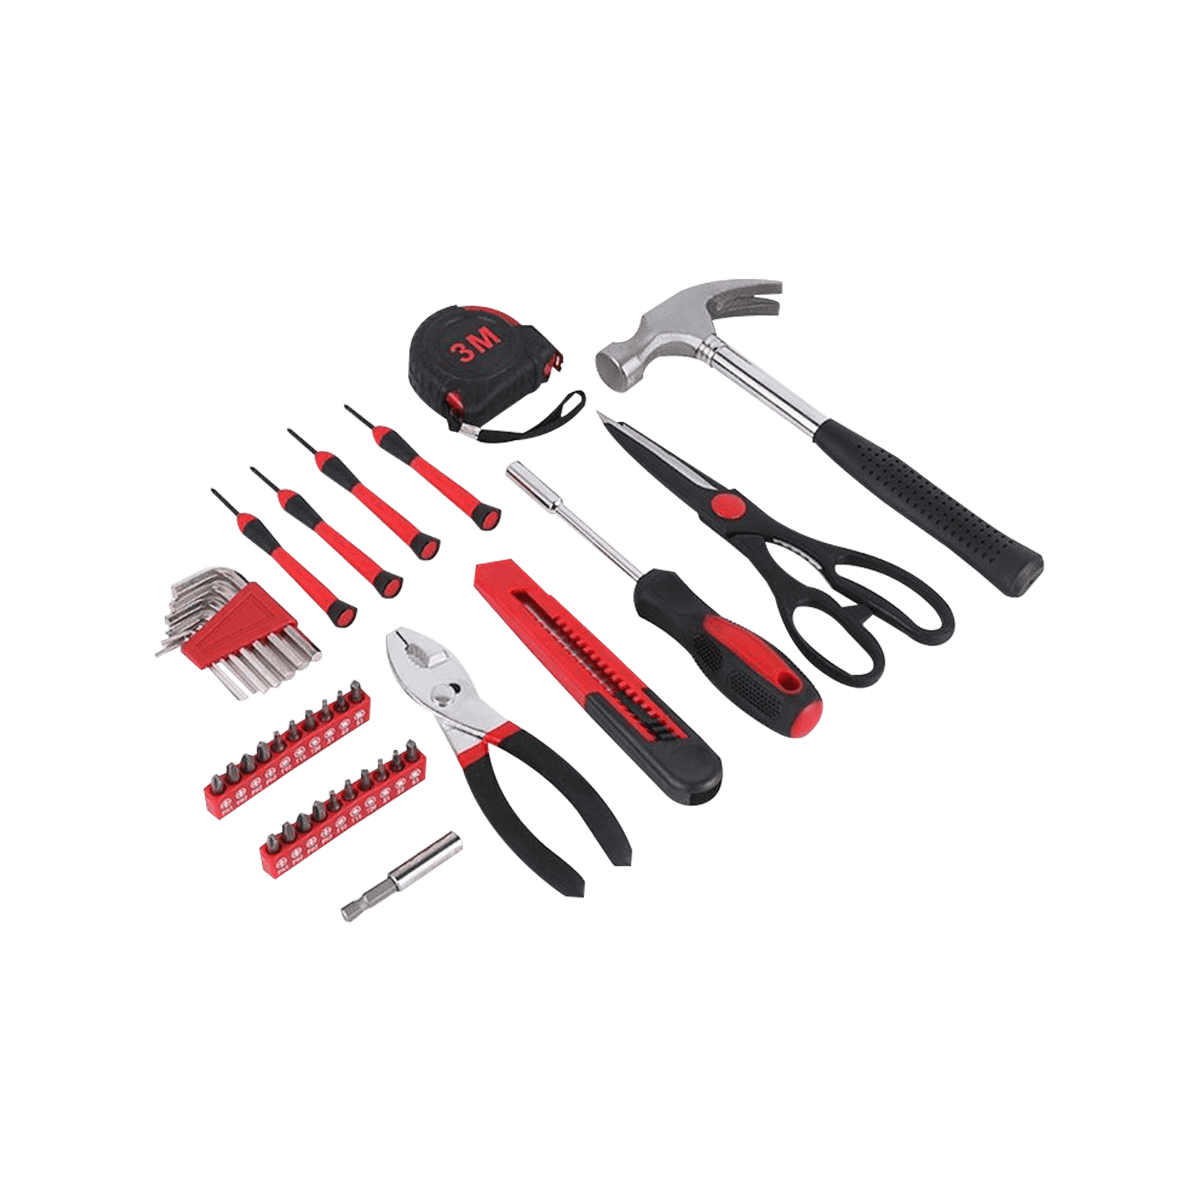 39 조각 도구 세트 휴대용 도구 상자 보관이 있는 가정용 손 도구 키트